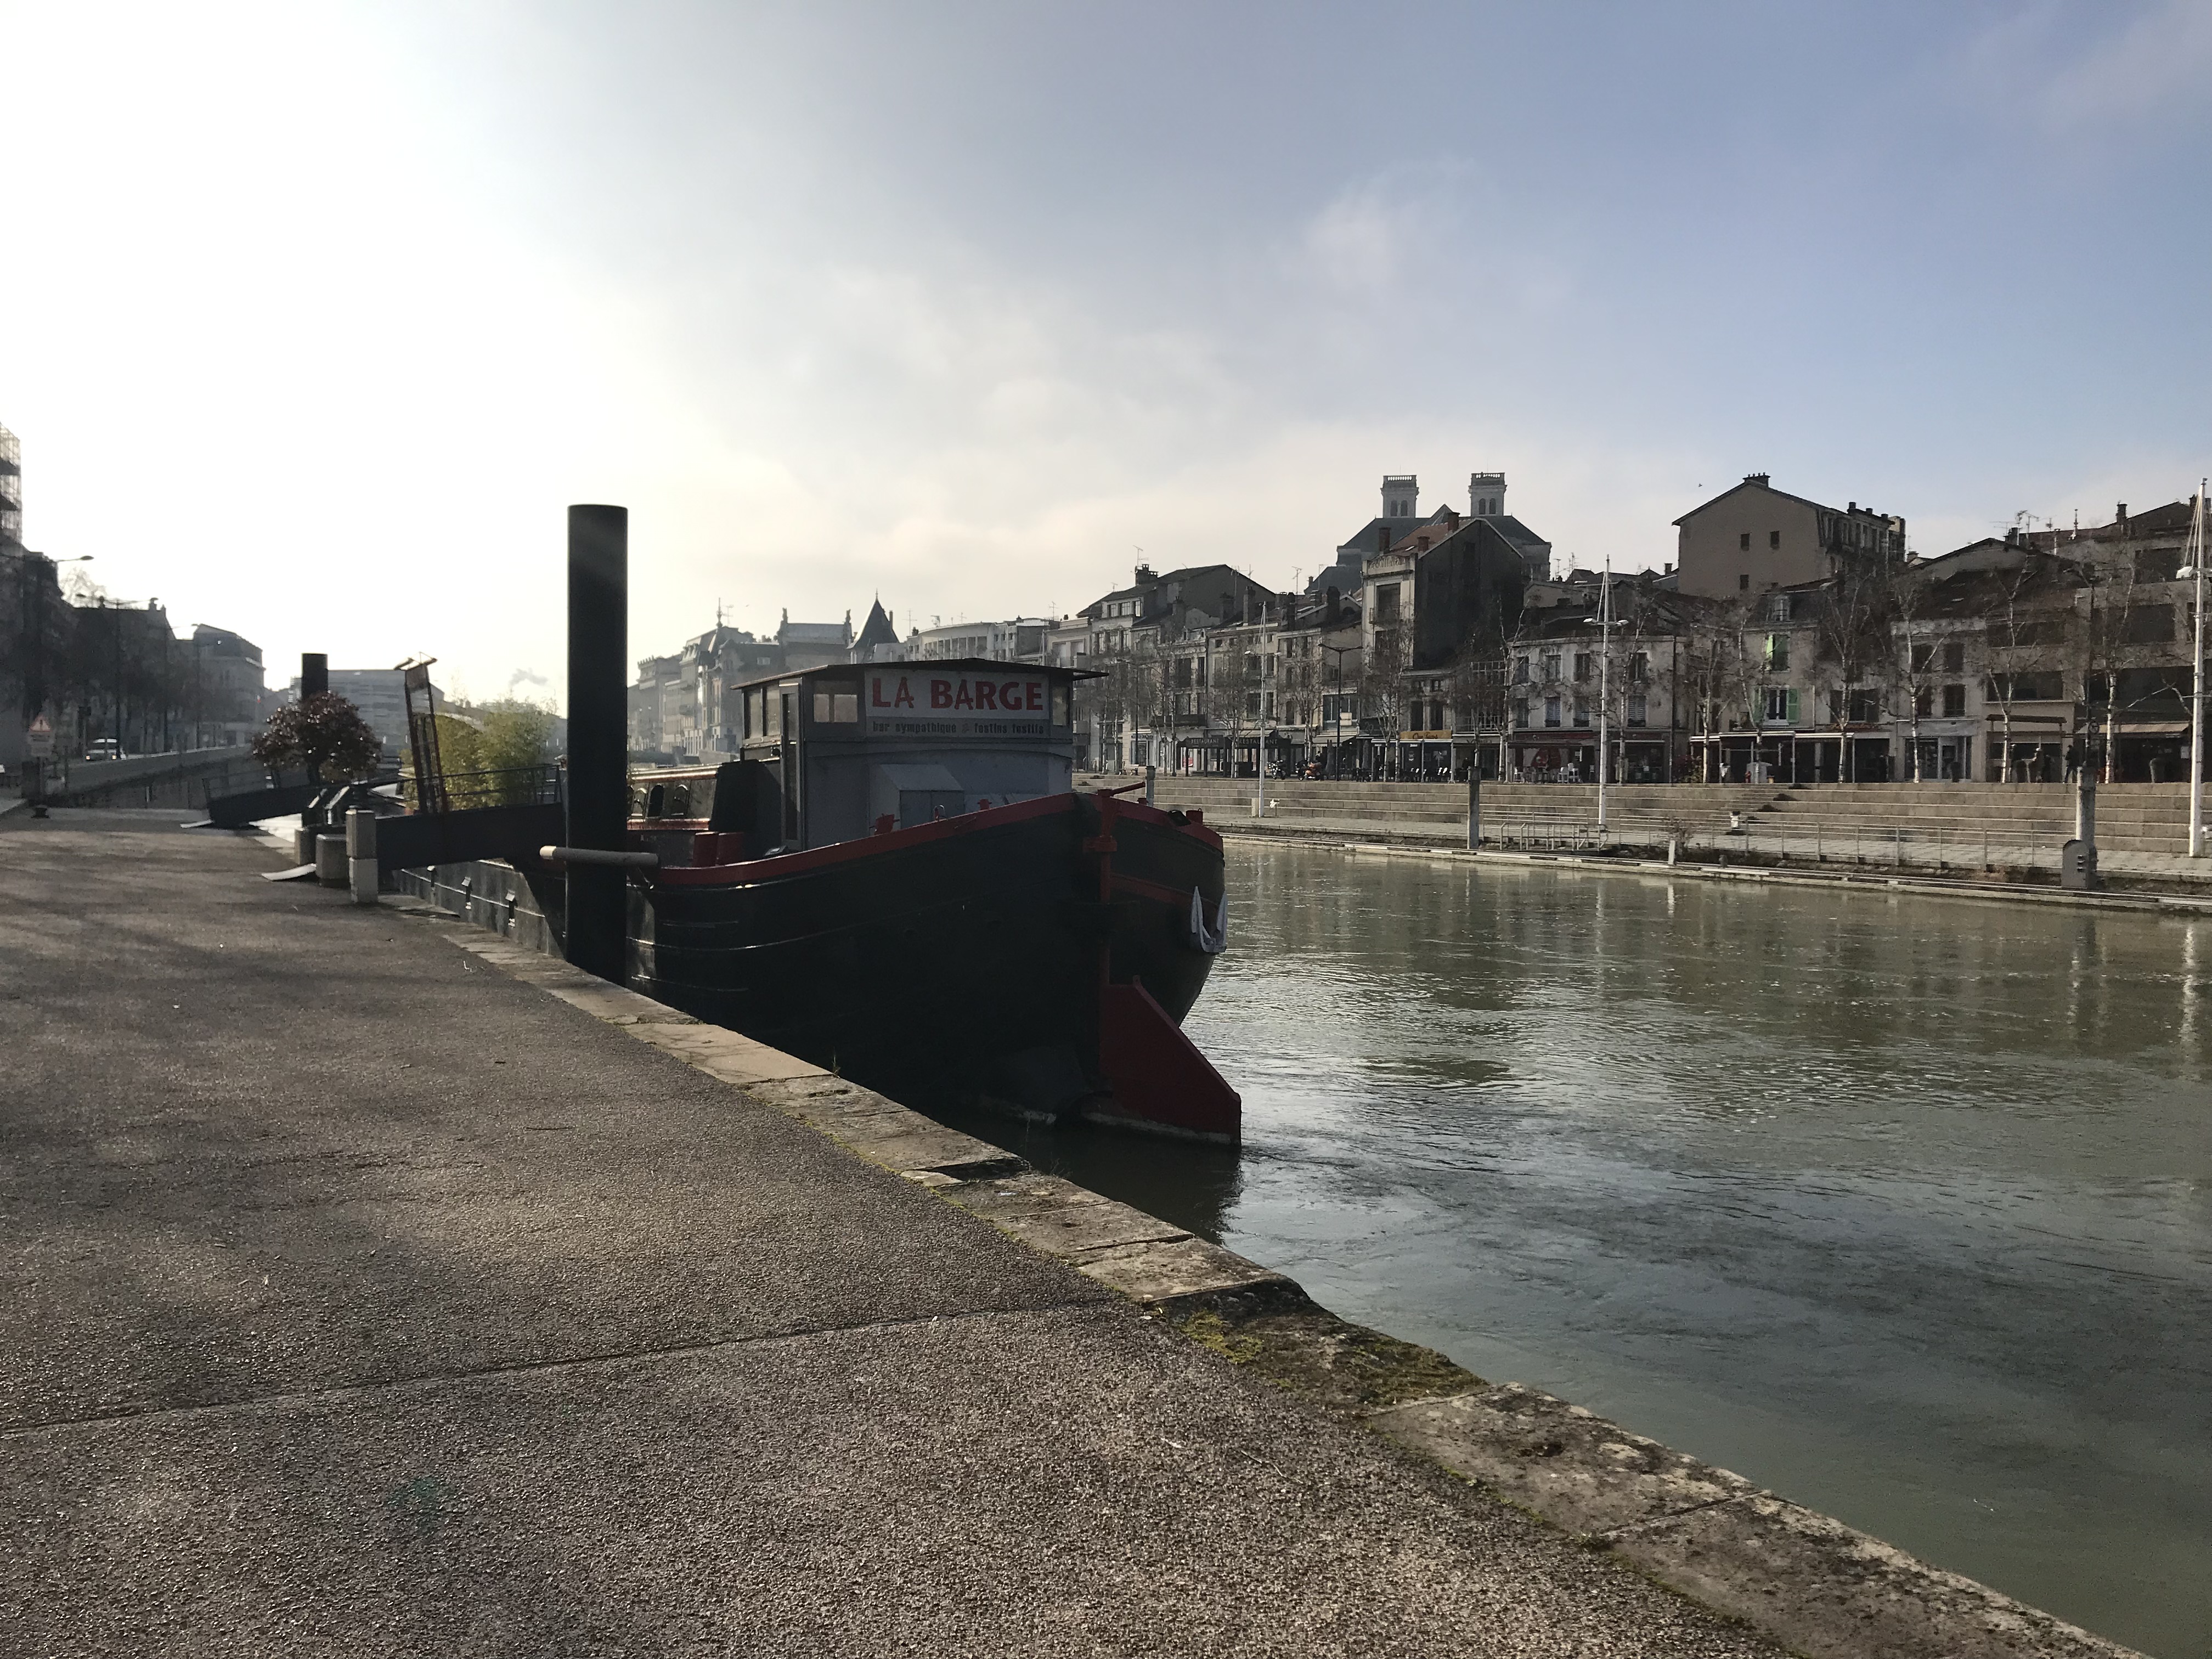 la barge, bateau de plaisance à quai, au fond, l'autre rive du fleuve Meuse